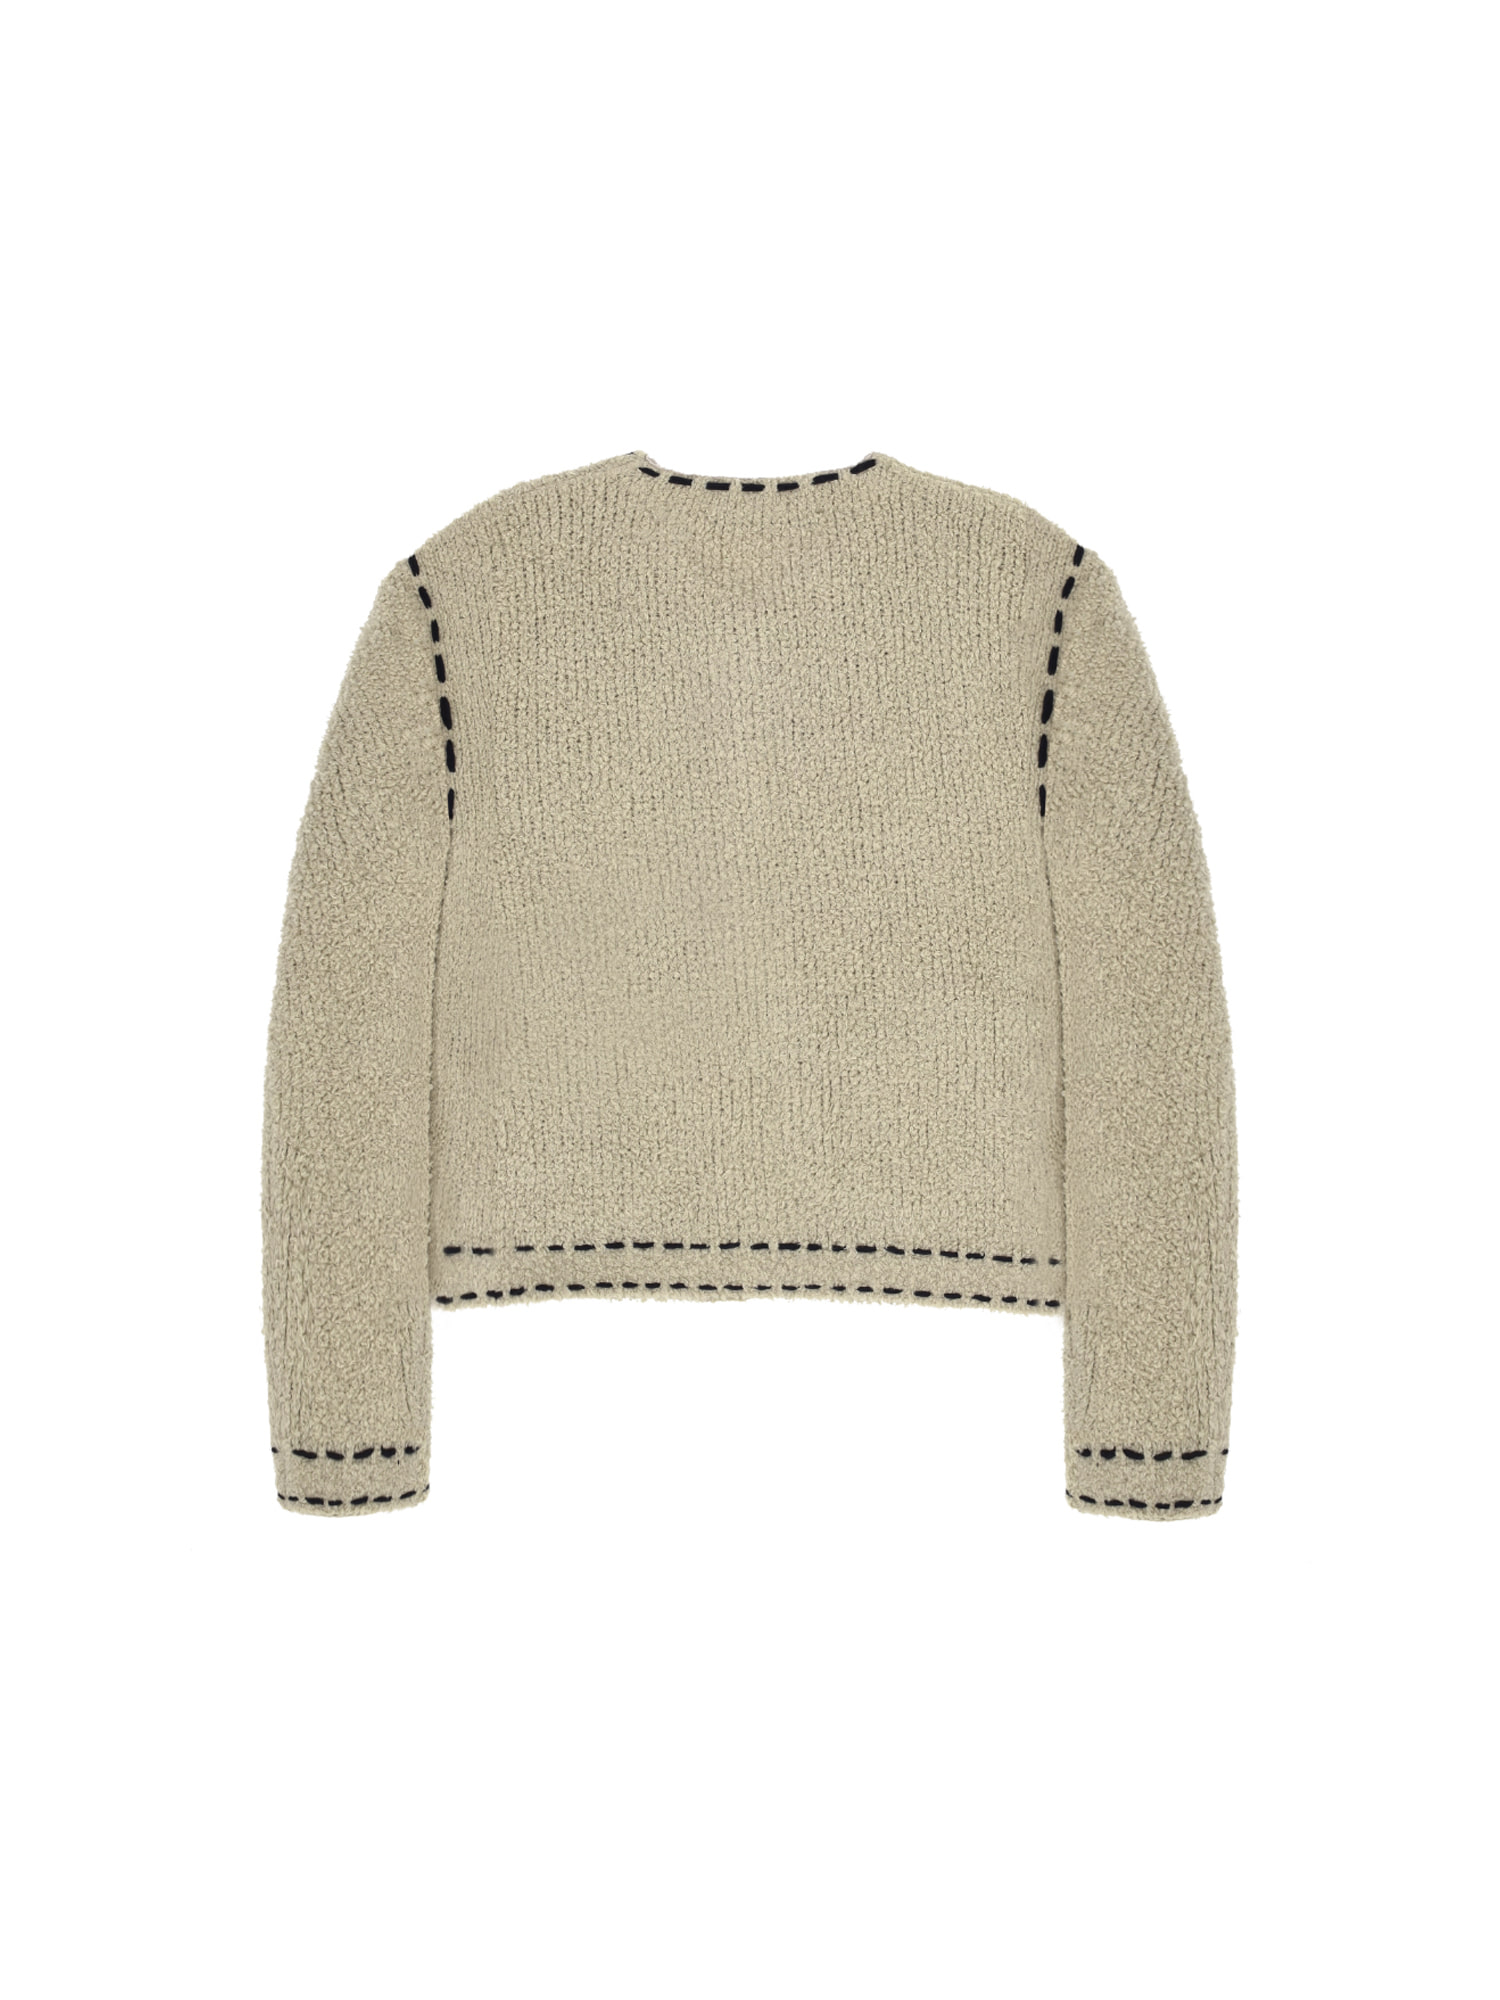 14950円 激安超特価 21ss The open product wool sweater